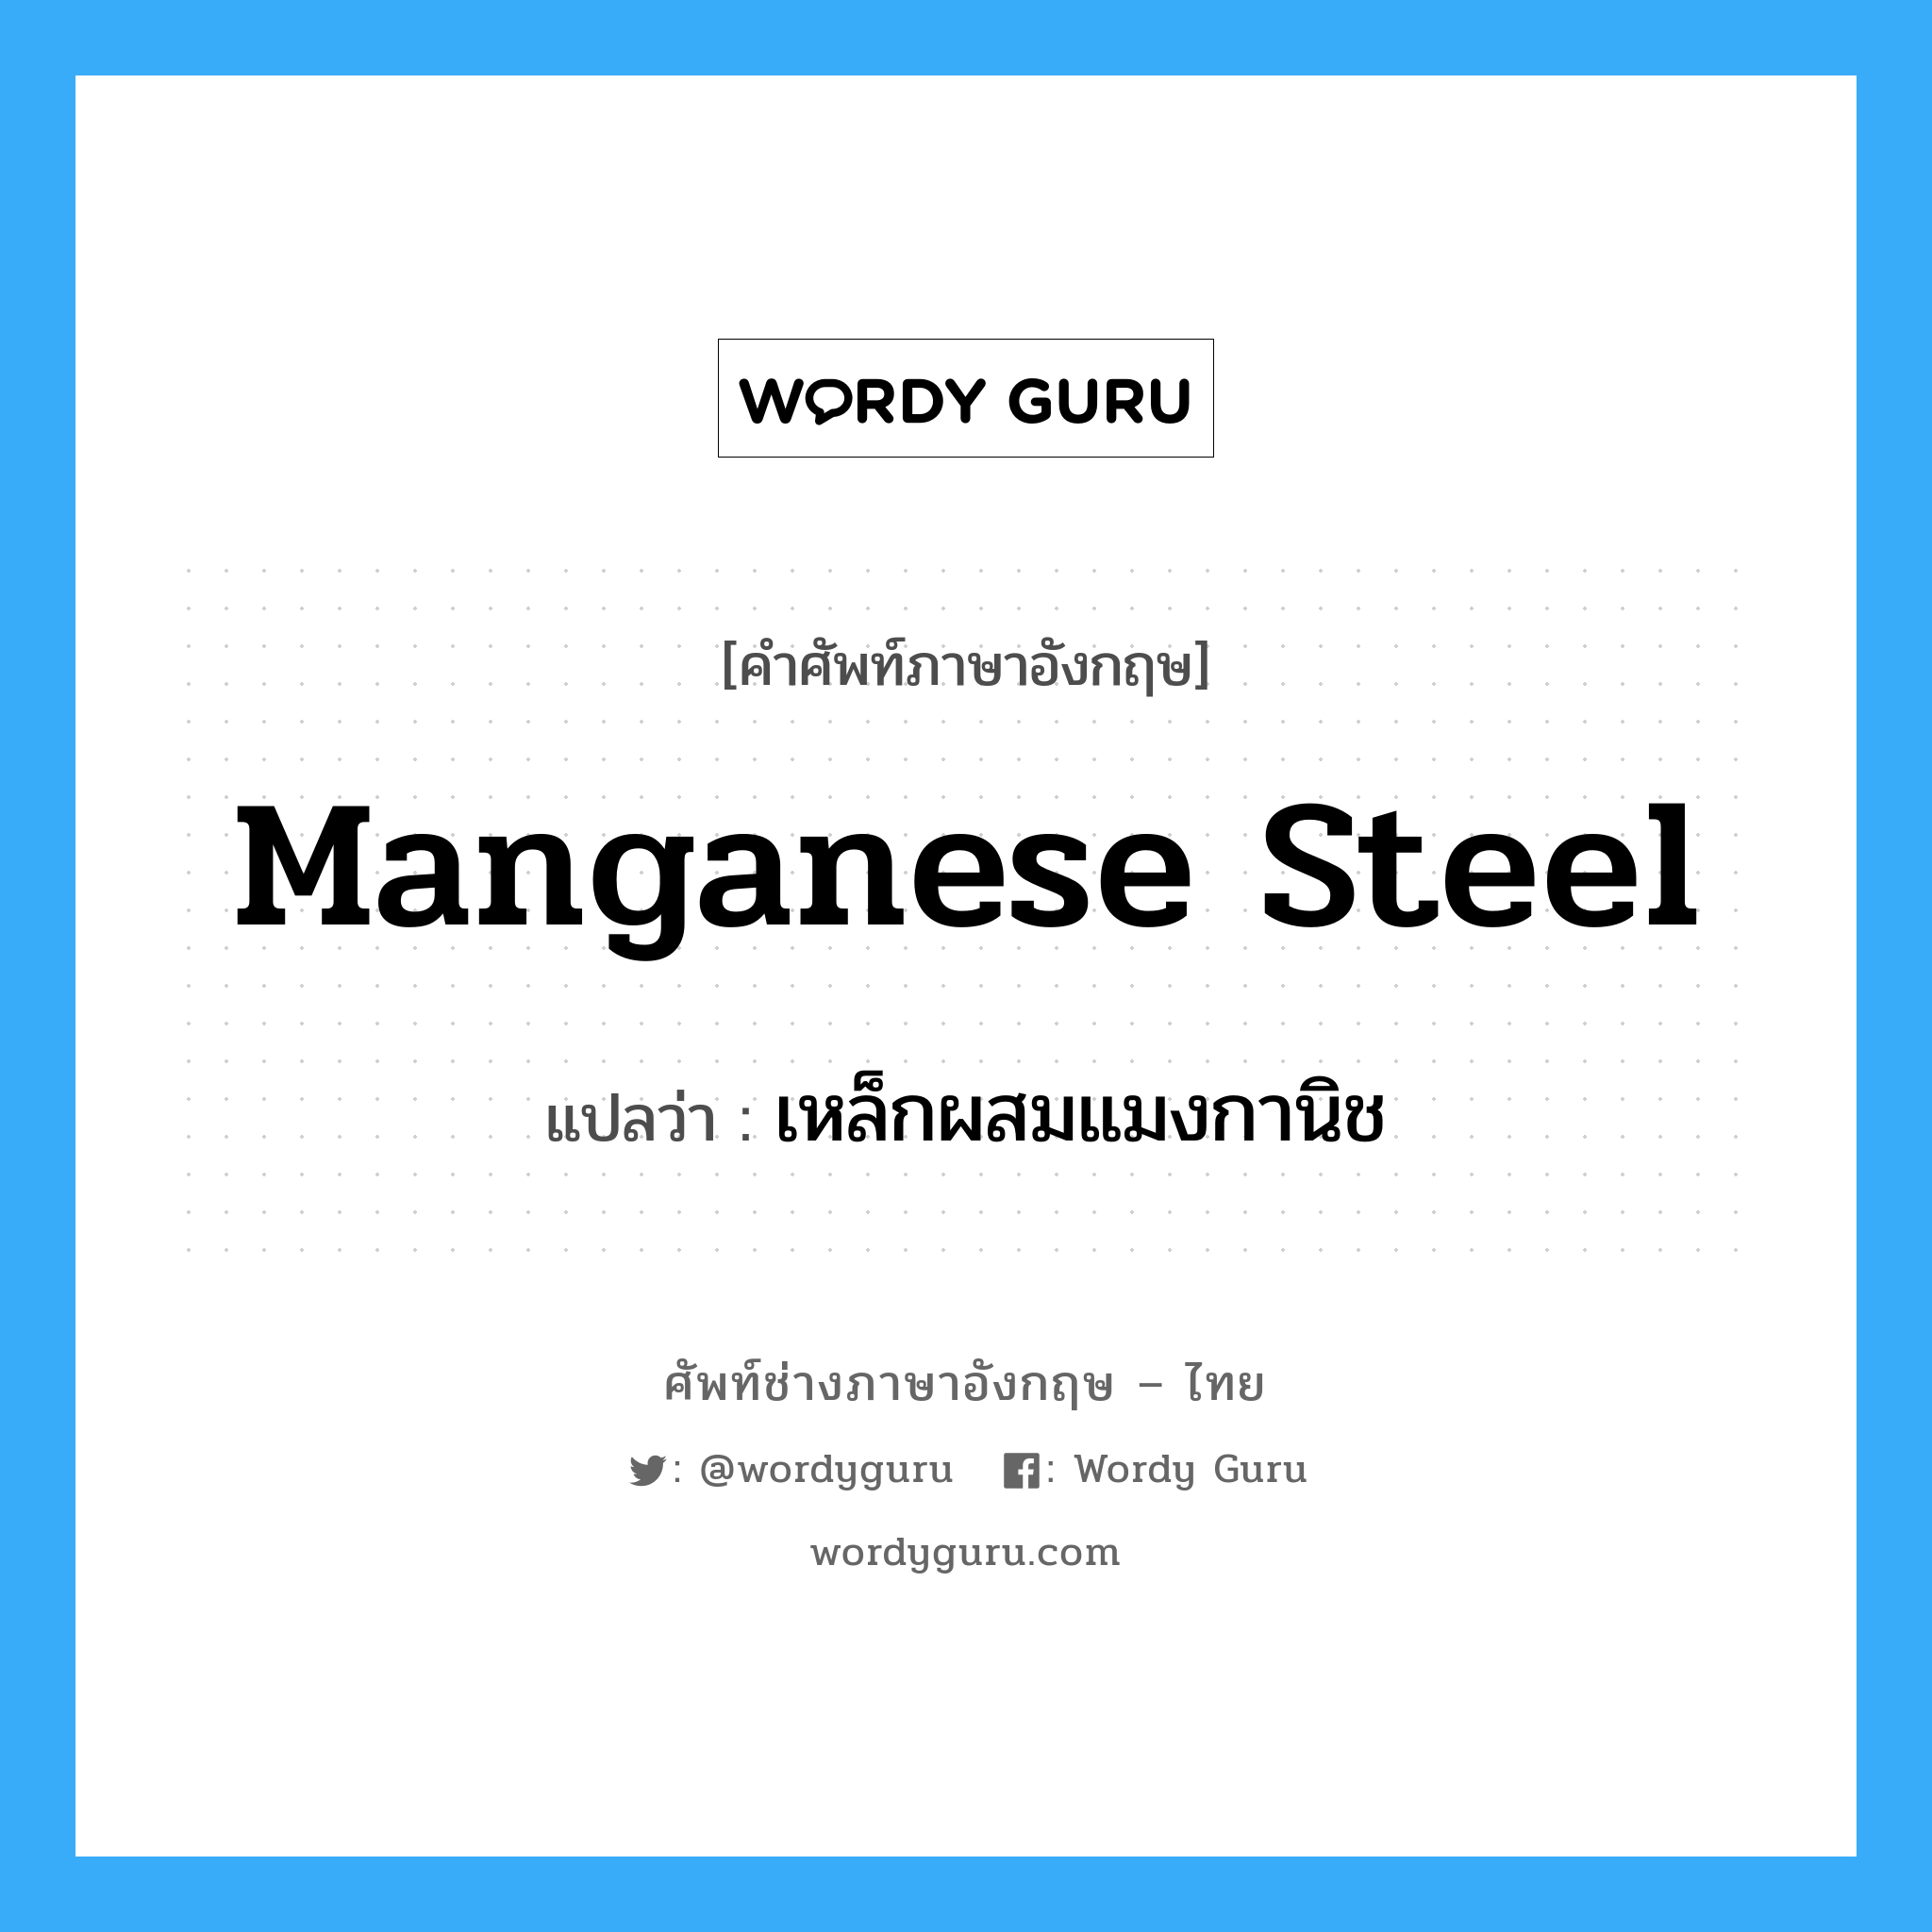 เหล็กผสมแมงกานิช ภาษาอังกฤษ?, คำศัพท์ช่างภาษาอังกฤษ - ไทย เหล็กผสมแมงกานิช คำศัพท์ภาษาอังกฤษ เหล็กผสมแมงกานิช แปลว่า manganese steel